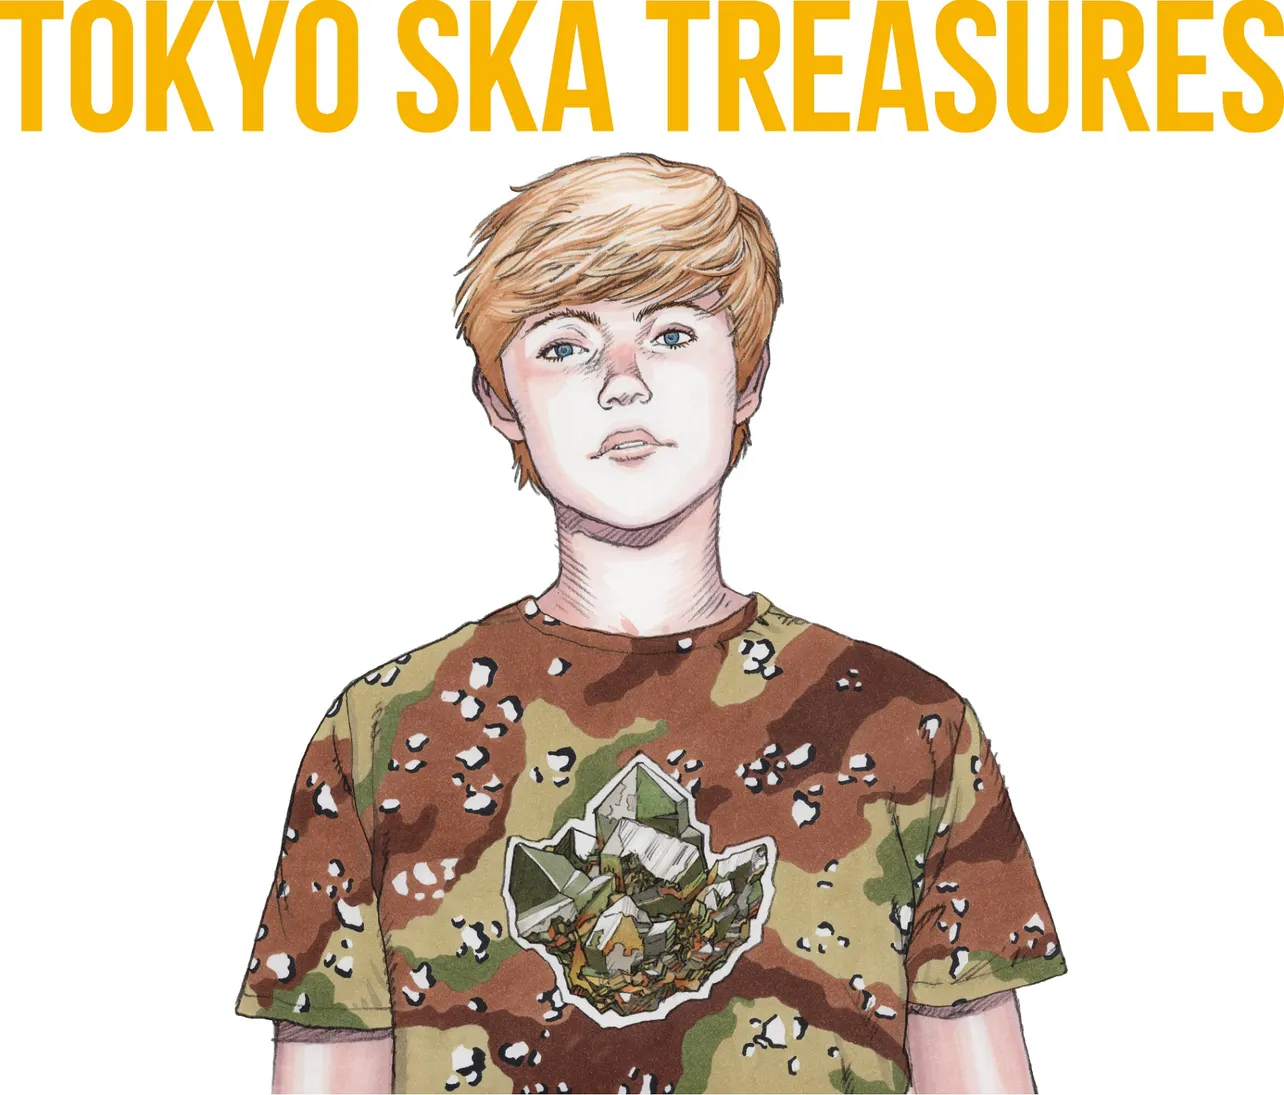 ベストアルバム『TOKYO SKA TREASURES 〜ベスト・オブ・東京スカパラダイスオーケストラ〜』のCD+DVD盤ジャケット